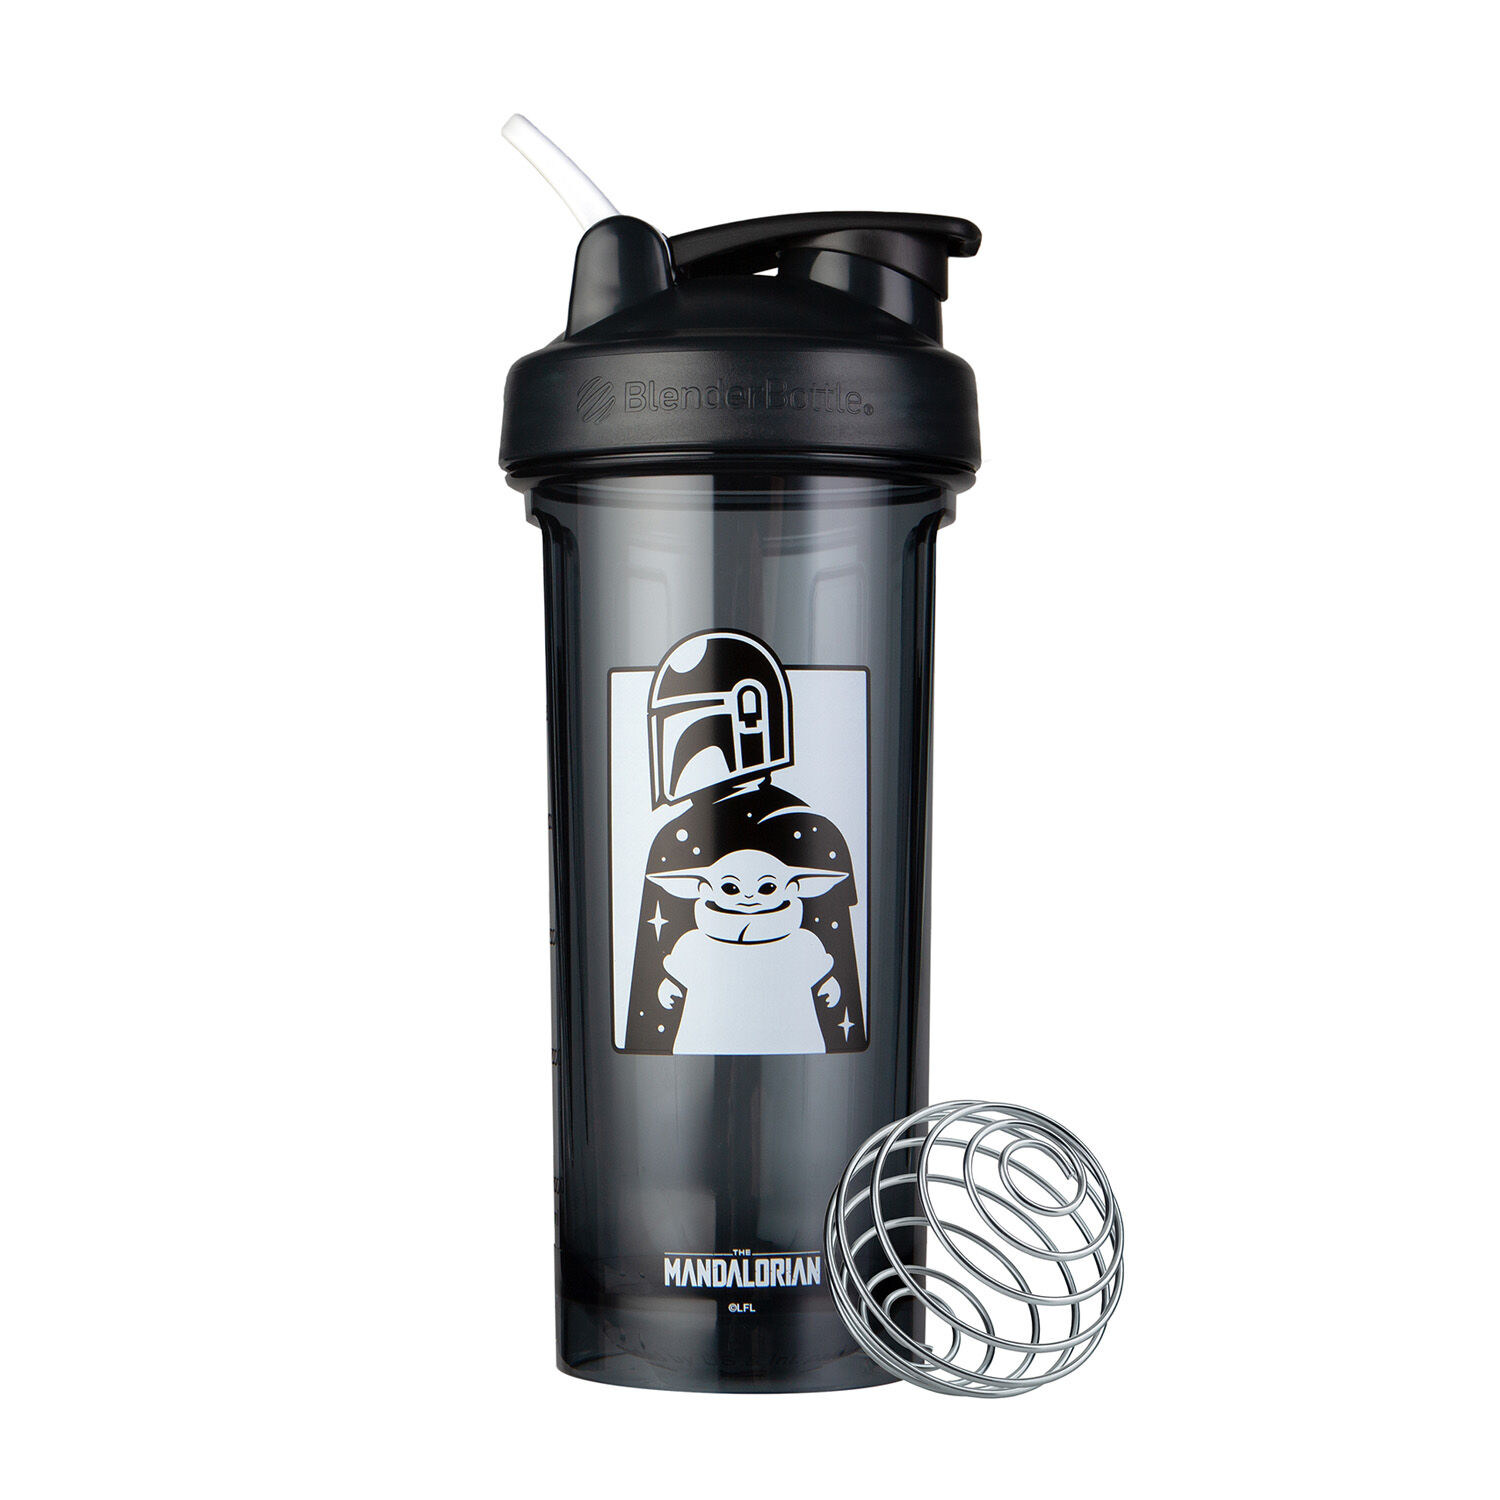 Blender Bottle shaker Cup (28 oz) - Nutrimart